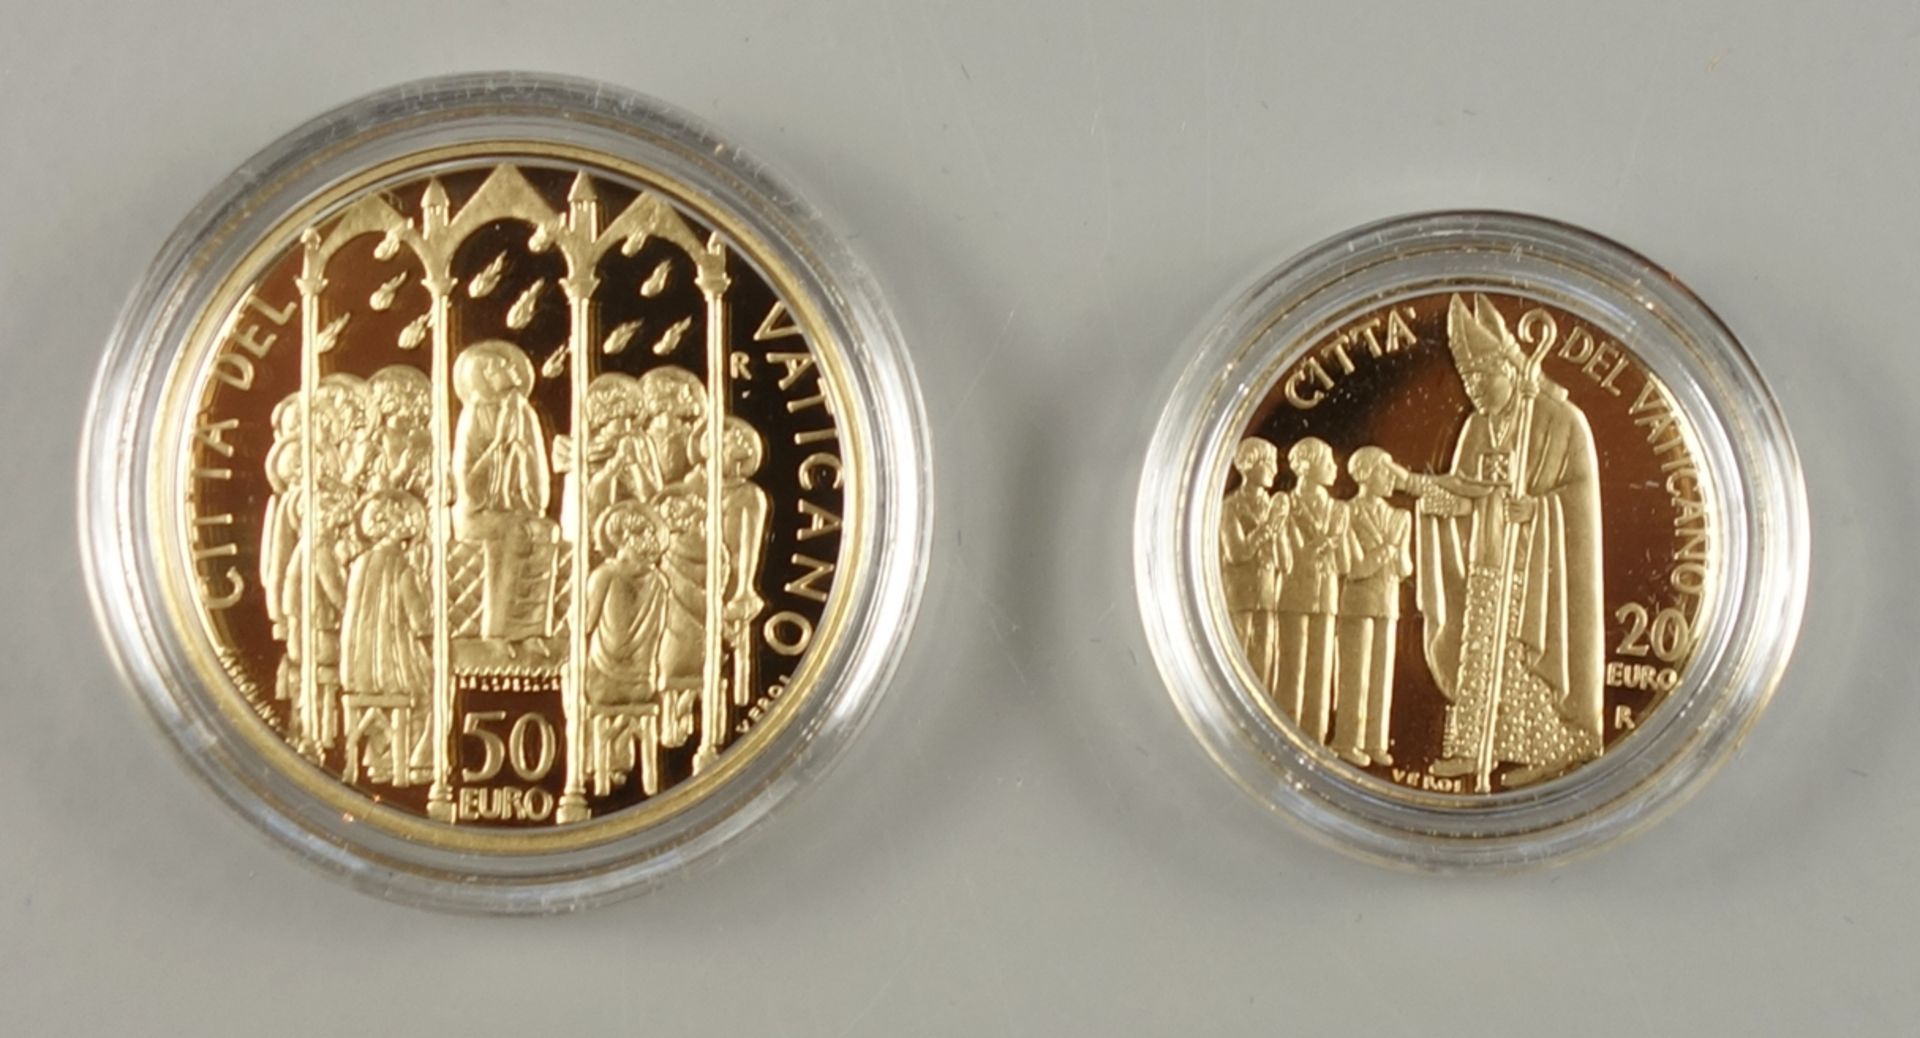 Münzsatz Vatikan 2006, Silber und Gold, alle in OVP / Kapsel, pp: 1ct bis 2 €, - Bild 4 aus 4